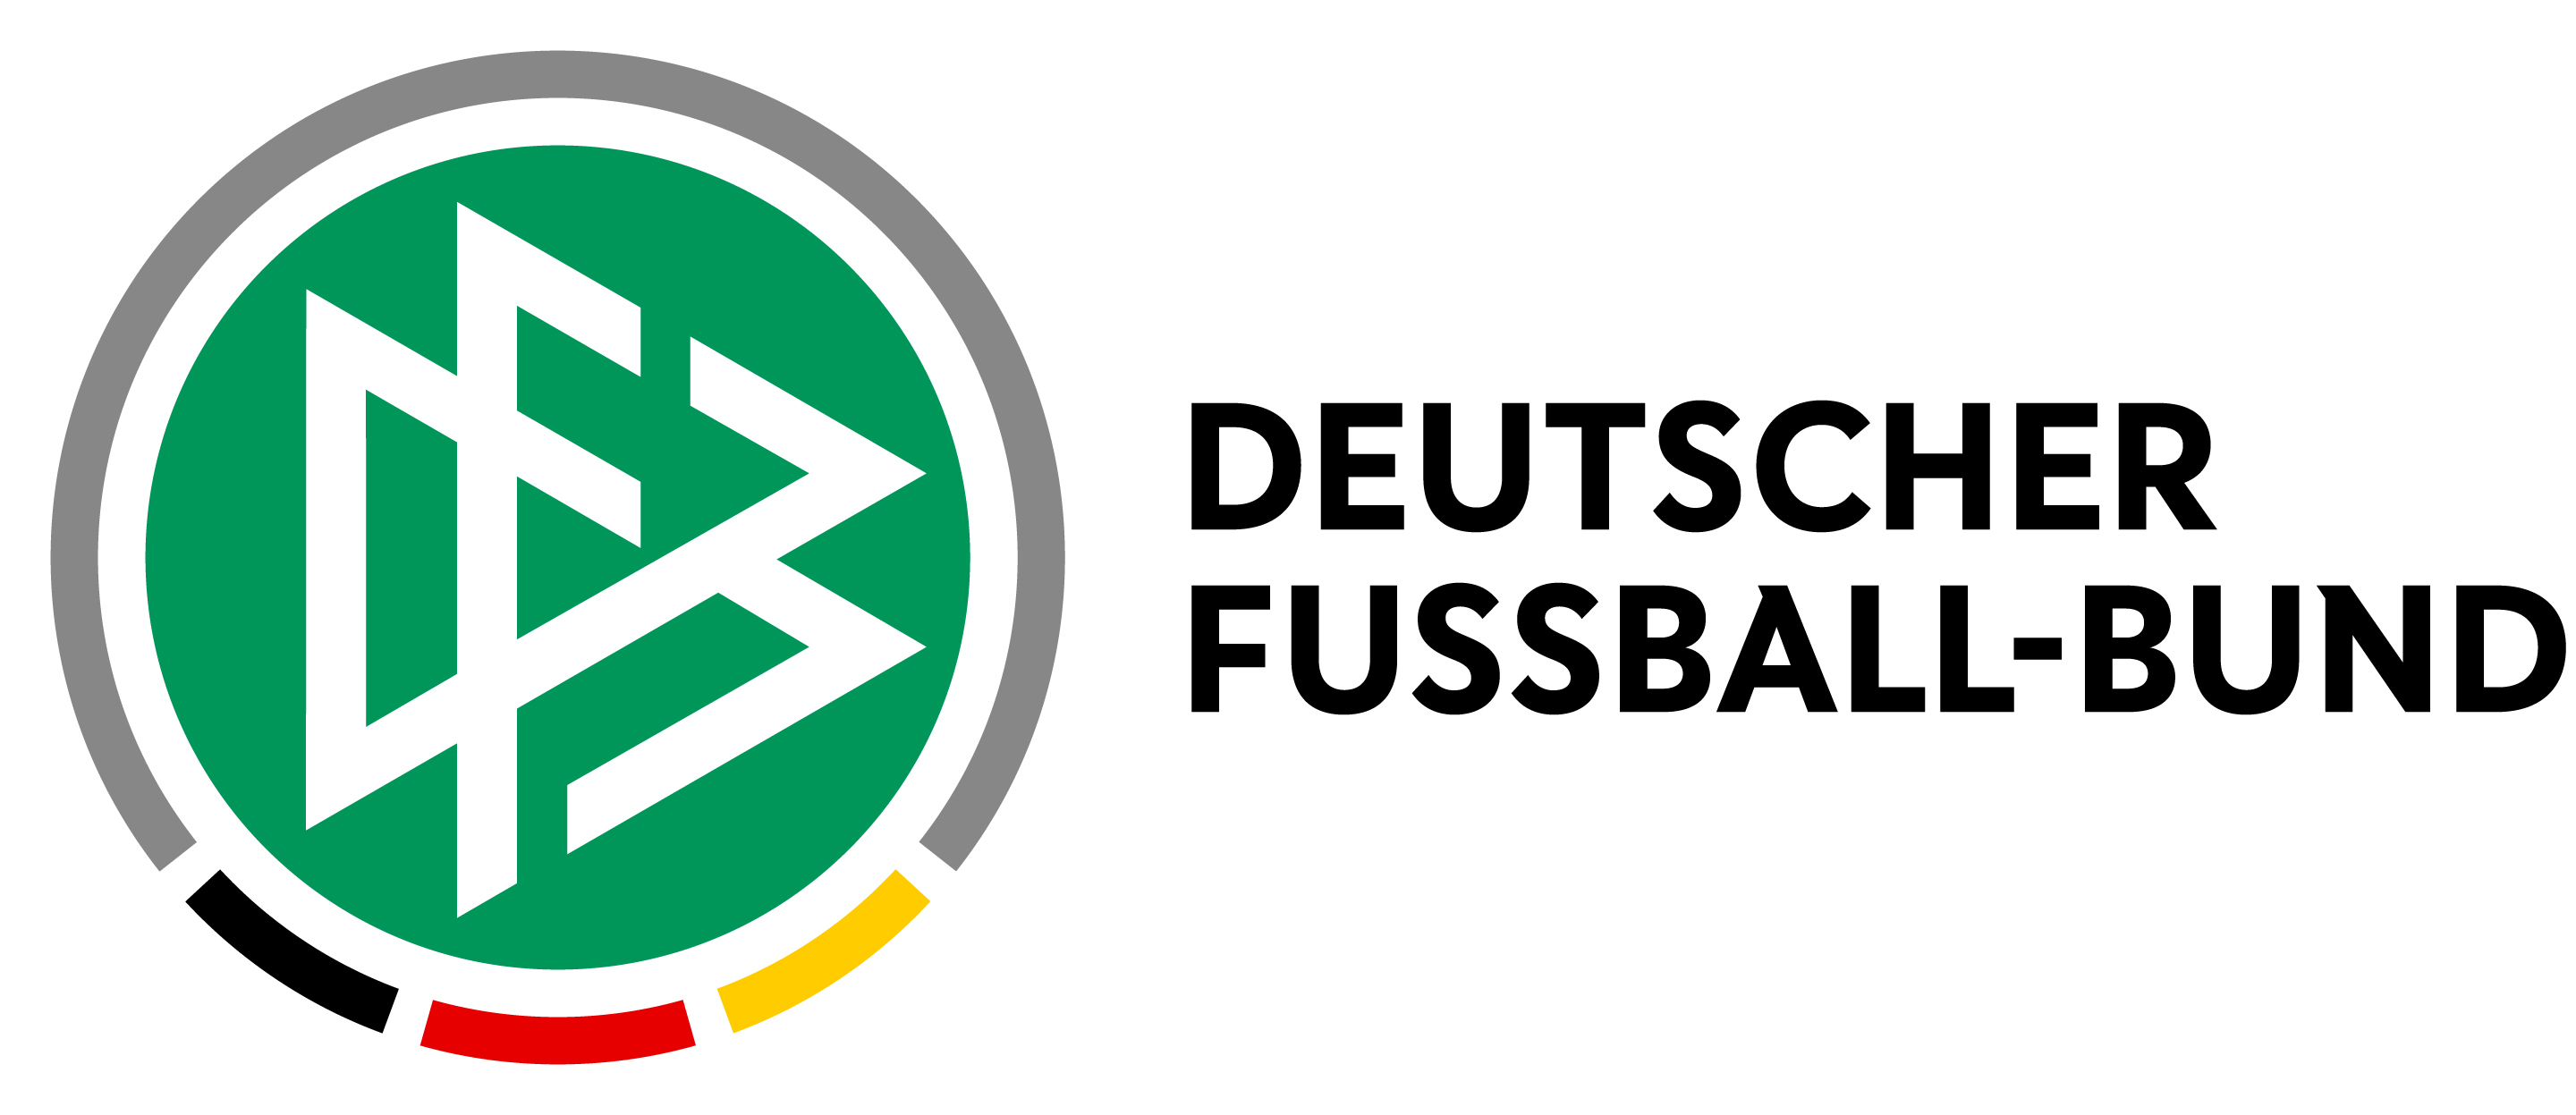 Deutscher Fußball-Bund (DFB) - Premium Partner 